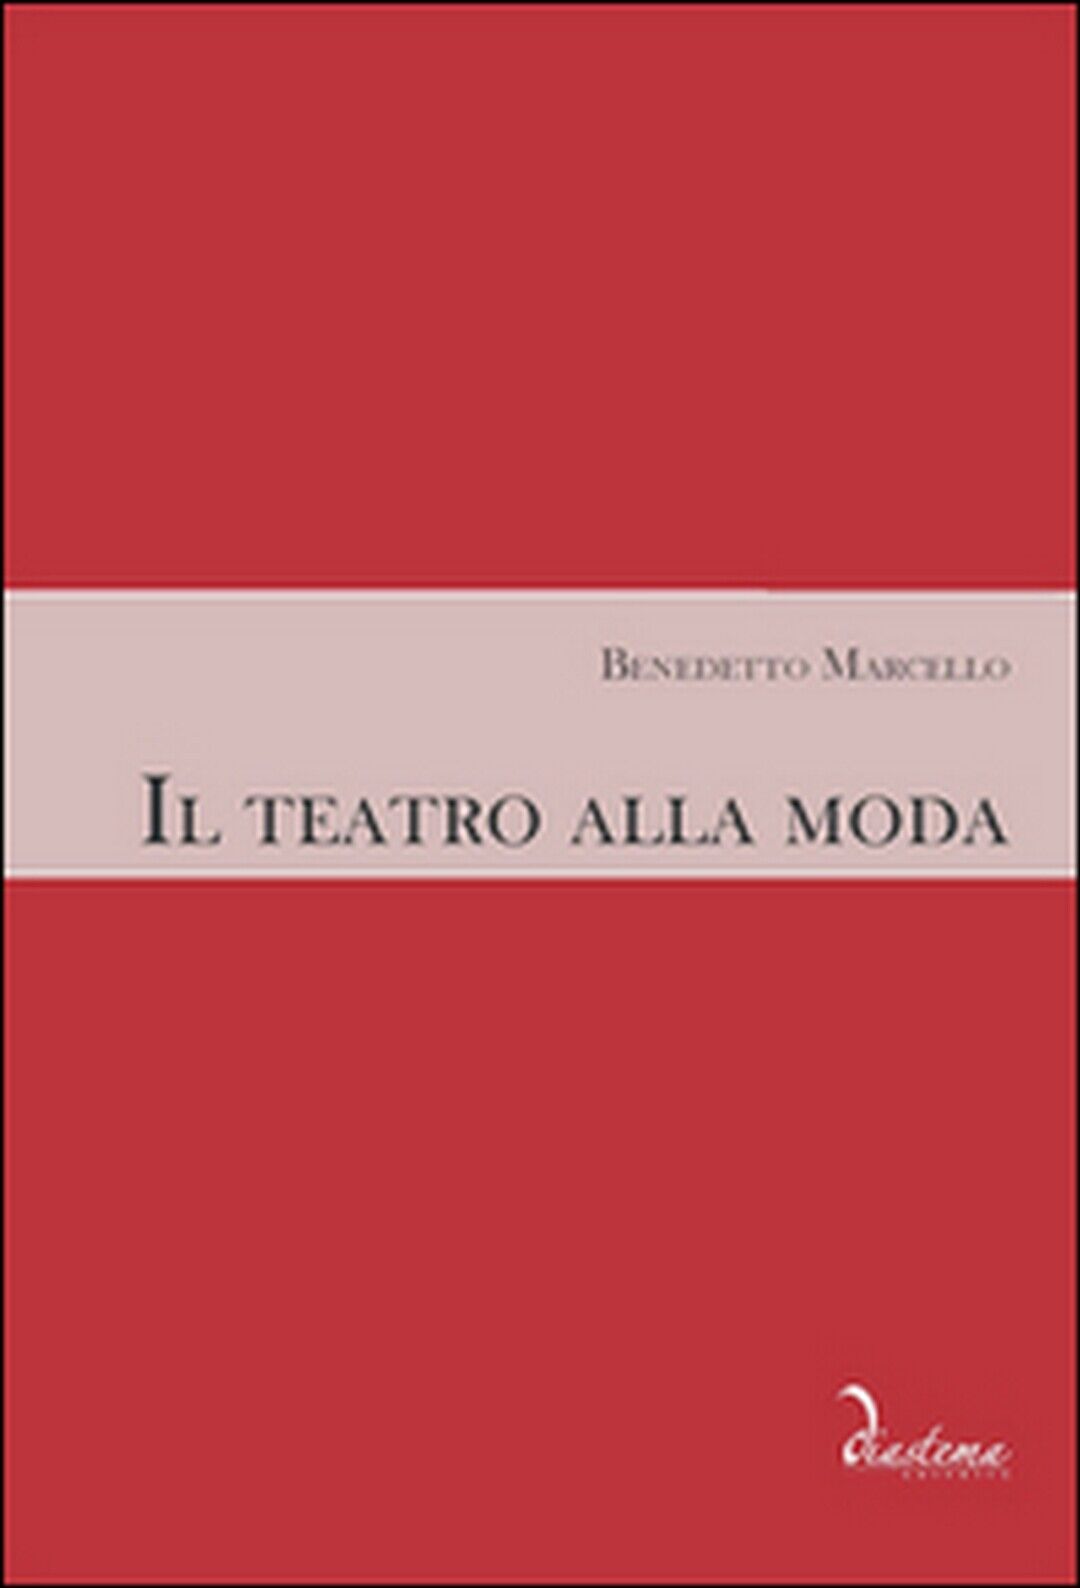 Il teatro alla moda  di Benedetto Marcello, M. Geremia, M. Bizzarini, F. Foresti libro usato